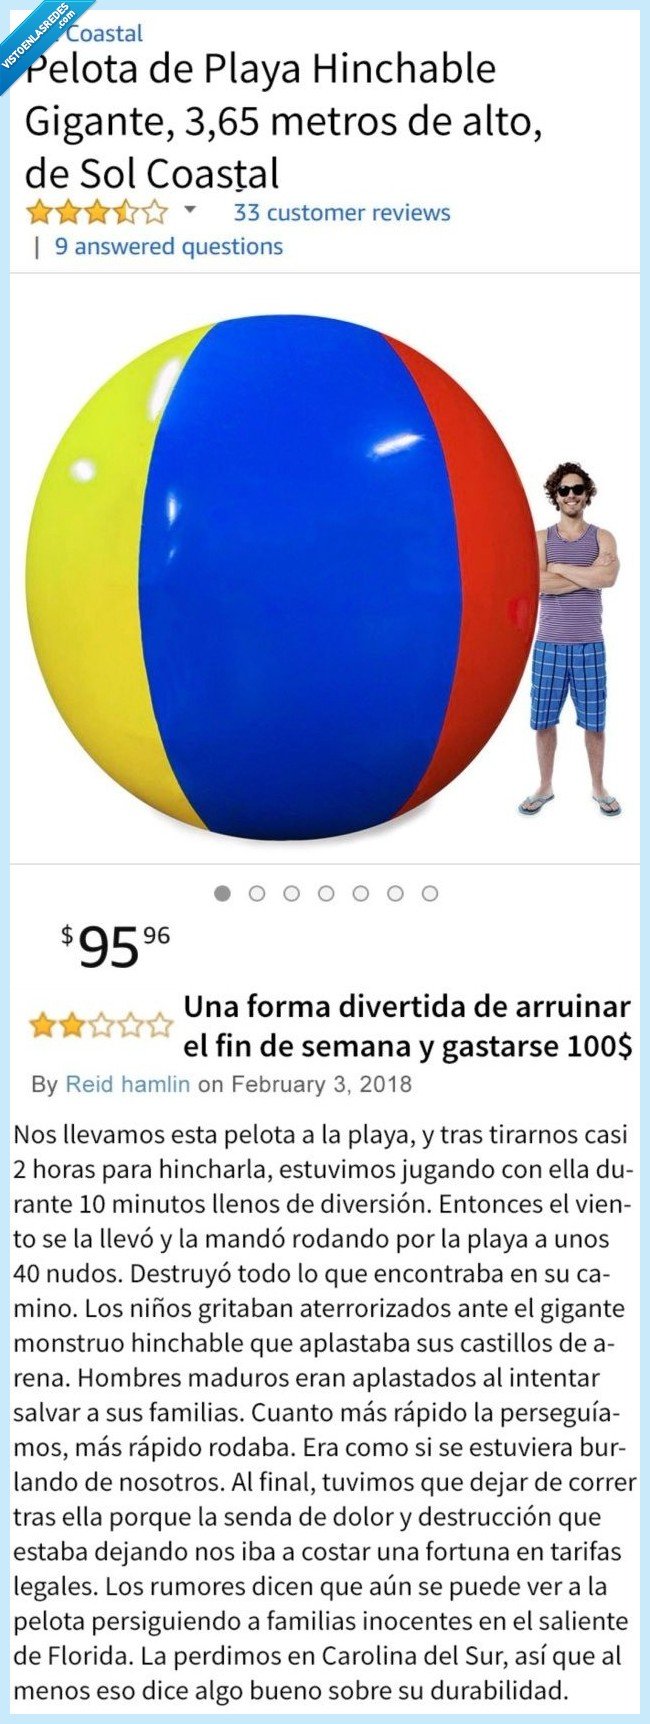 482526 - La opinión sobre esta pelota que lo ha petado fuerte en Amazon por ser la más original de todas 